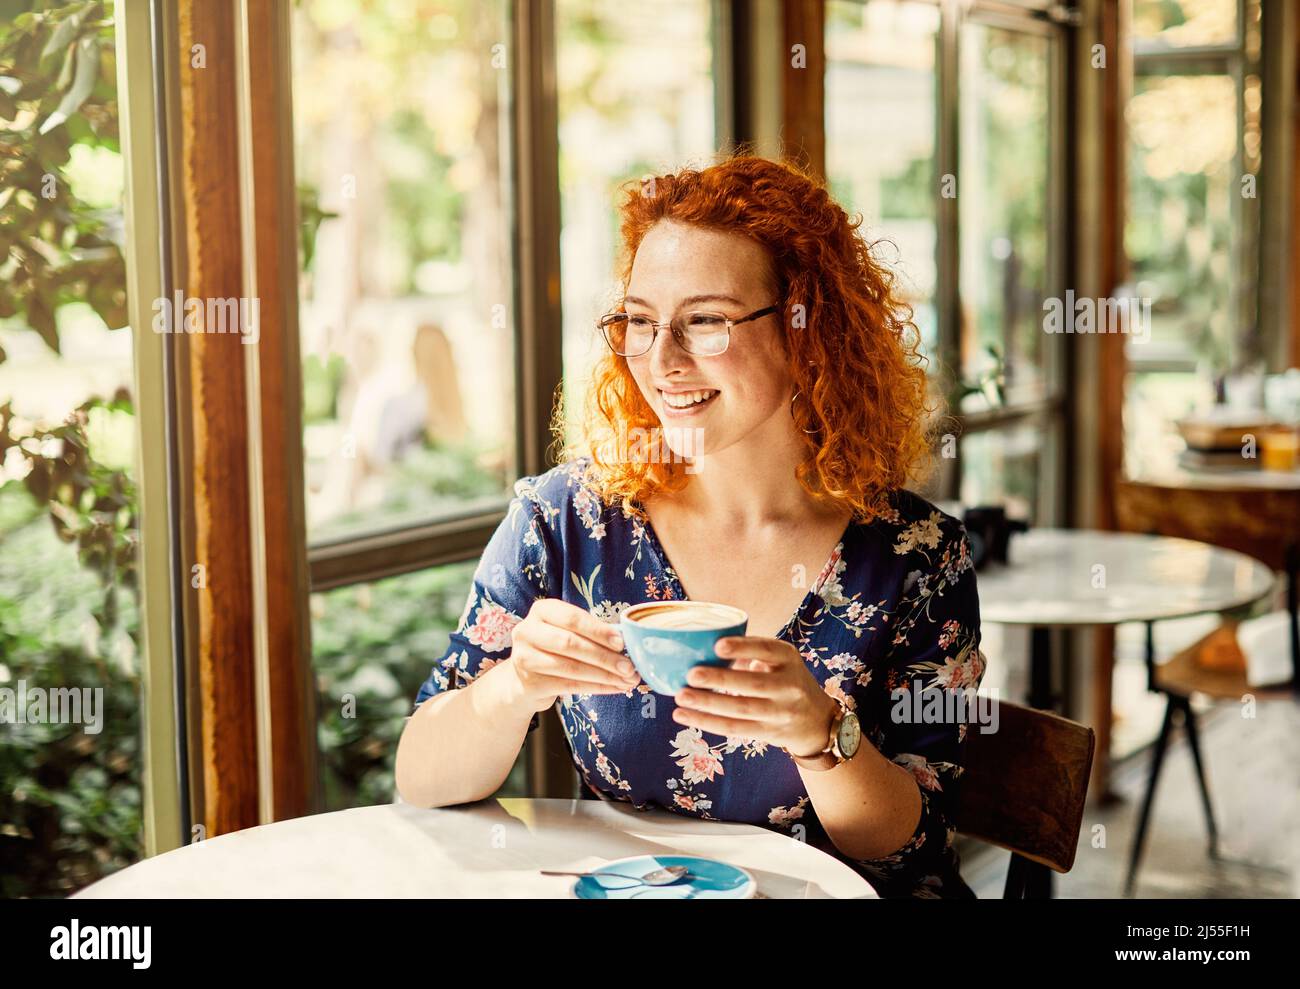 cafe donna ragazza lifestyle bere caffè giovane solo ritratto femmina bella tazza sorridente cappuccino felice Foto Stock